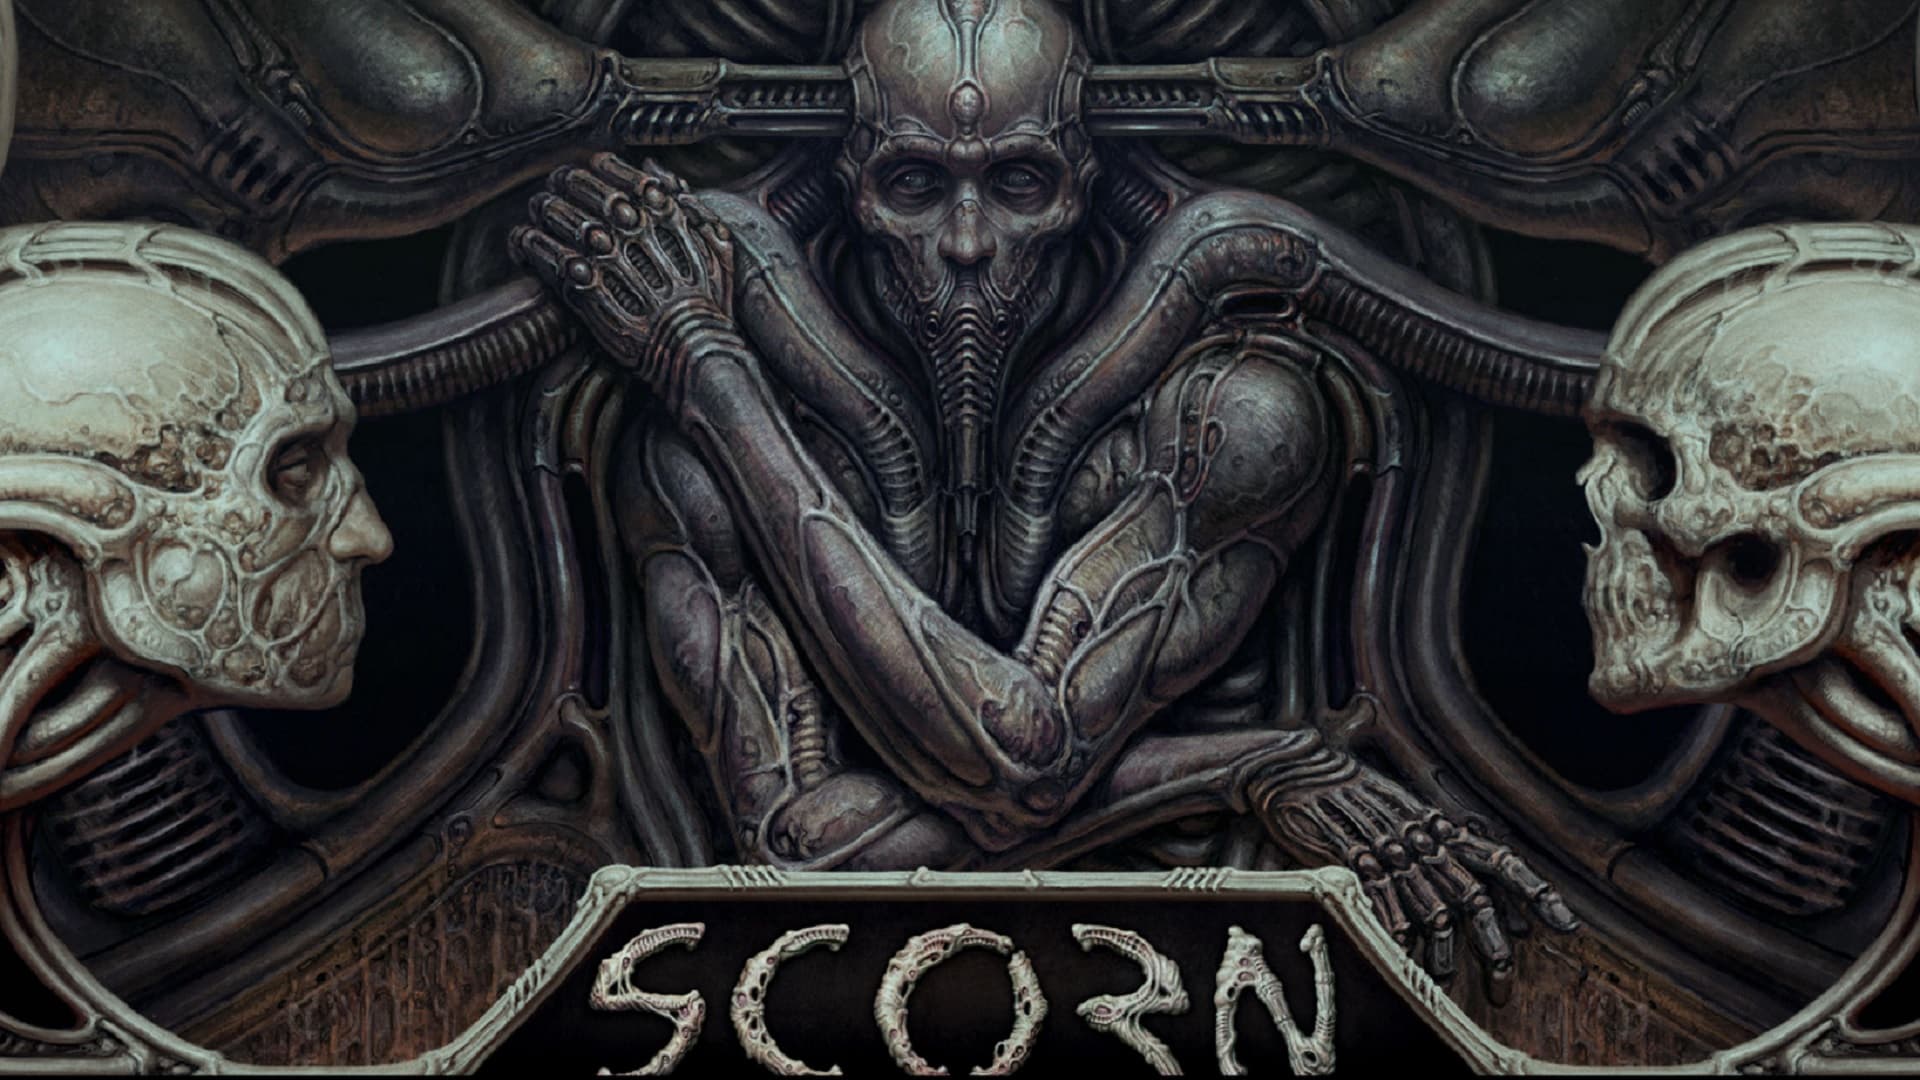 La cover di Scorn